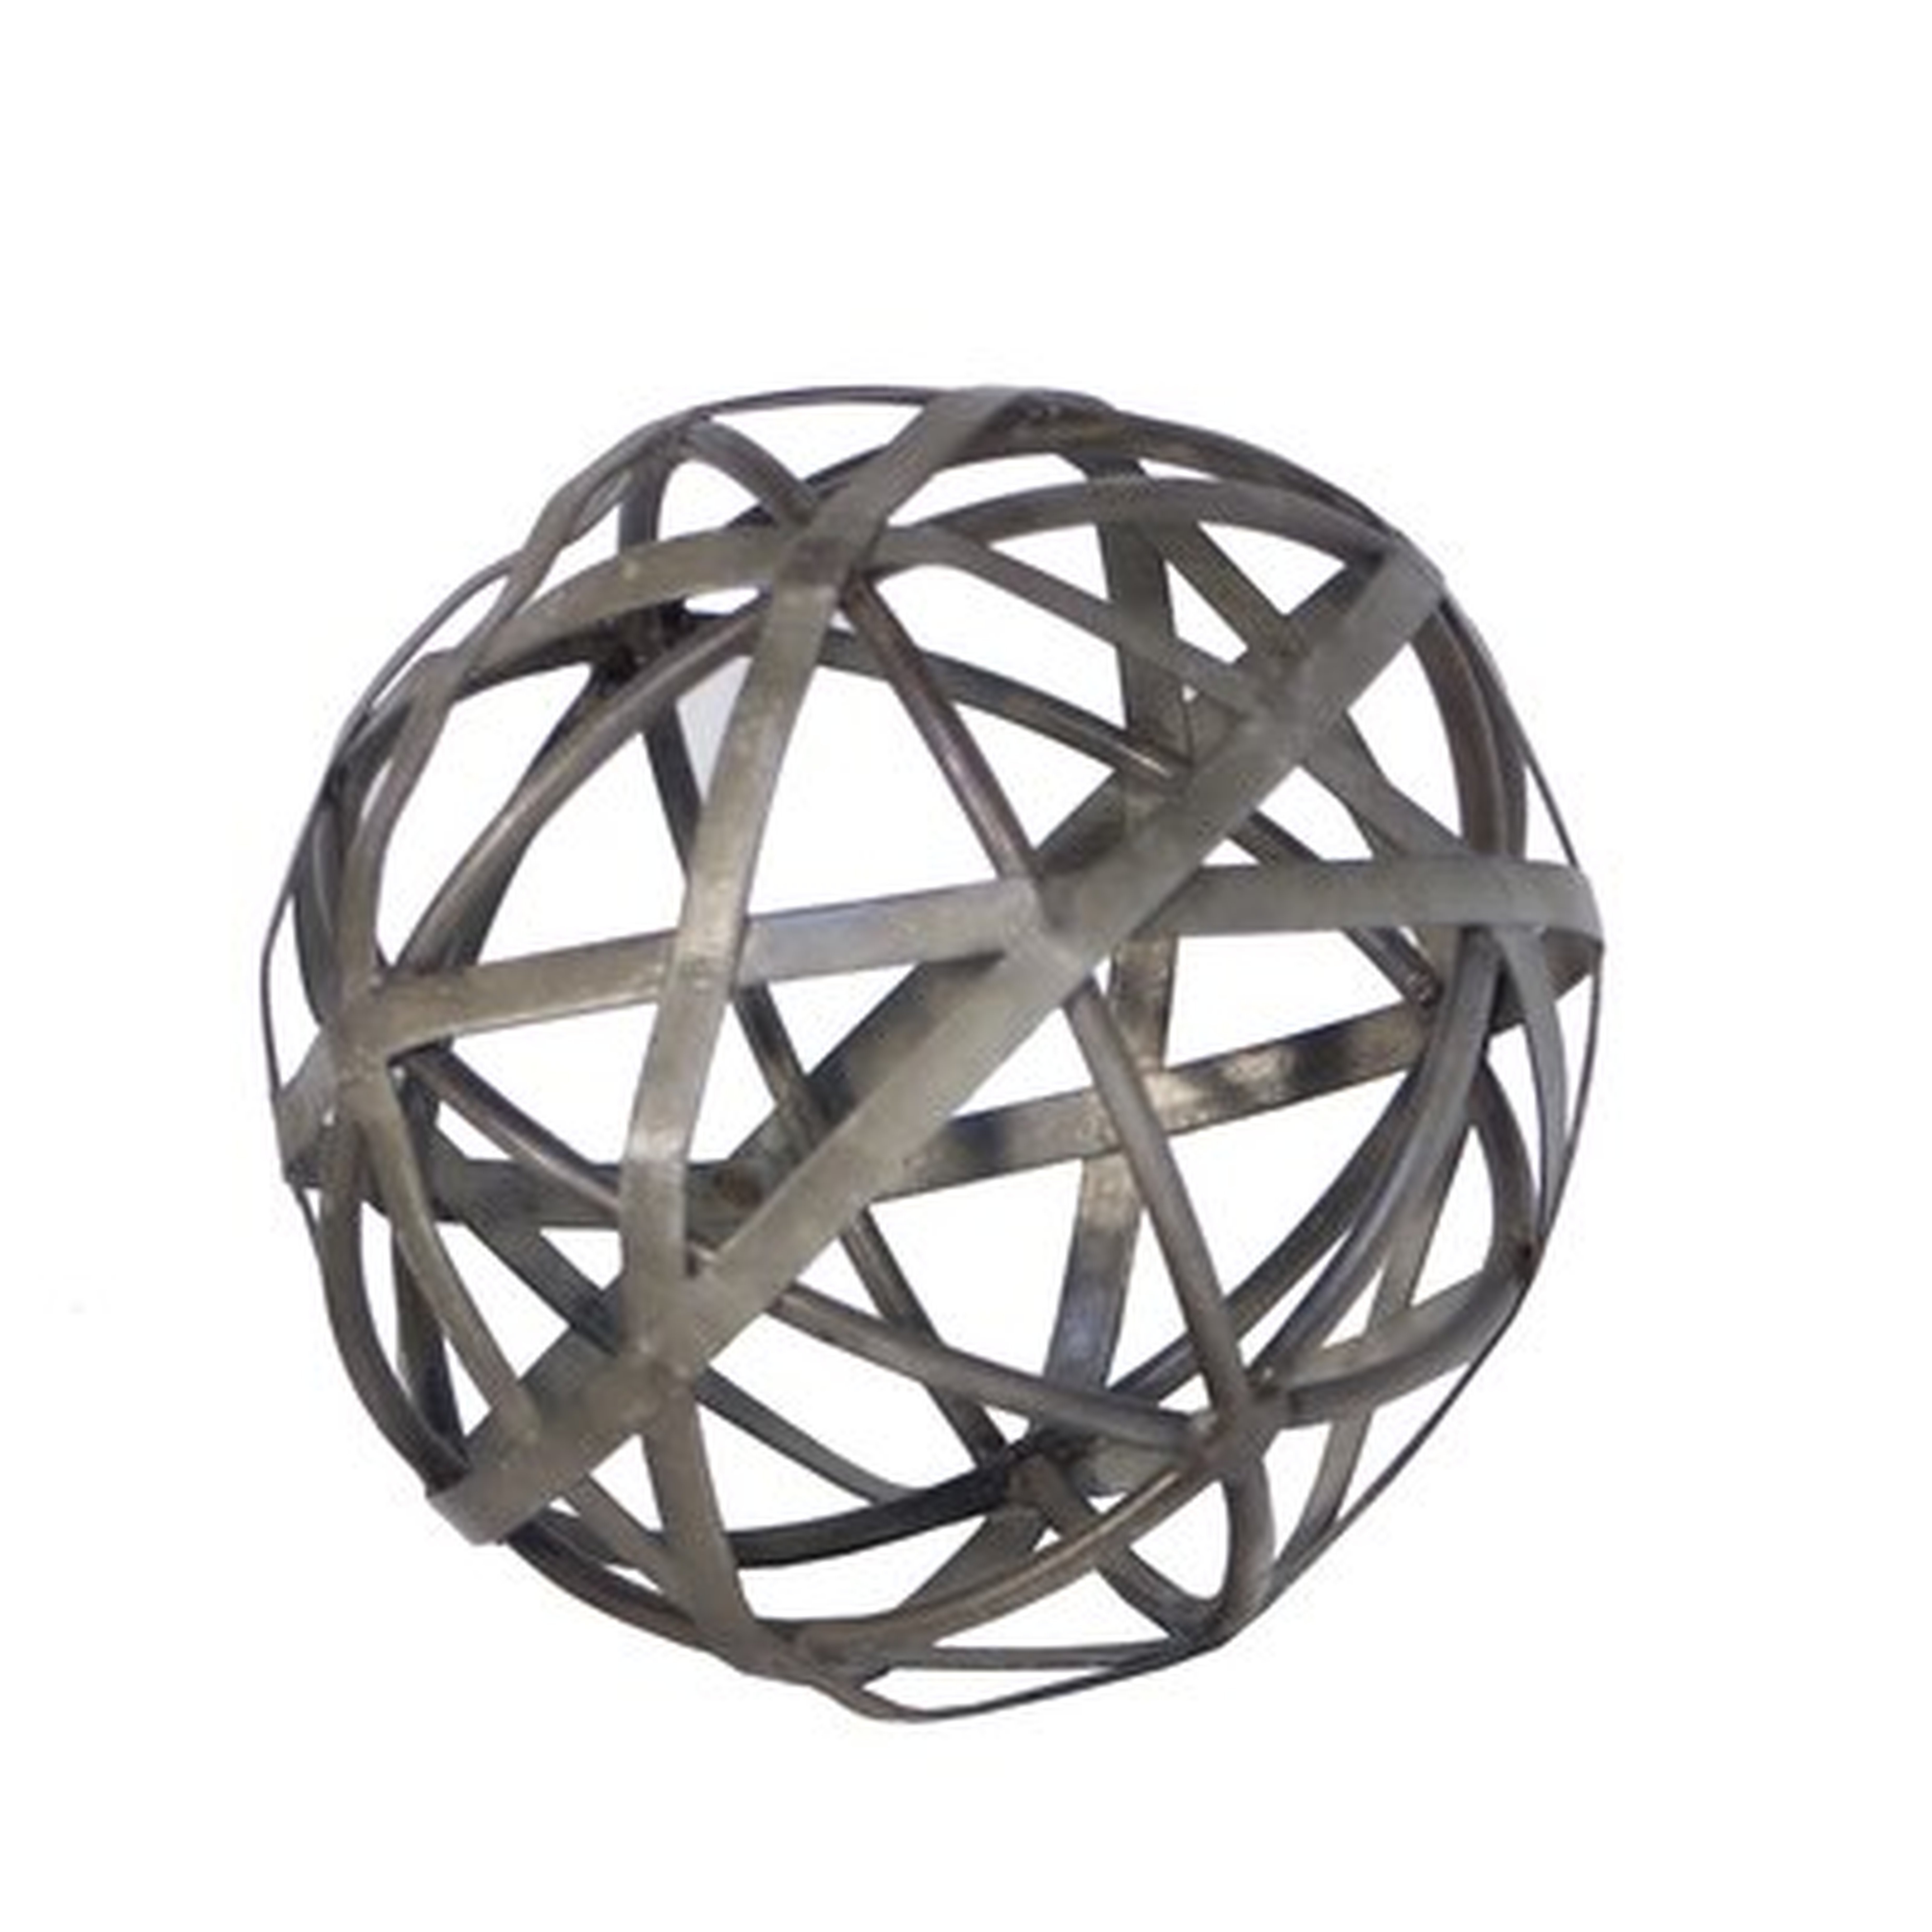 Grossi Galvanized Sphere Sculpture - Wayfair